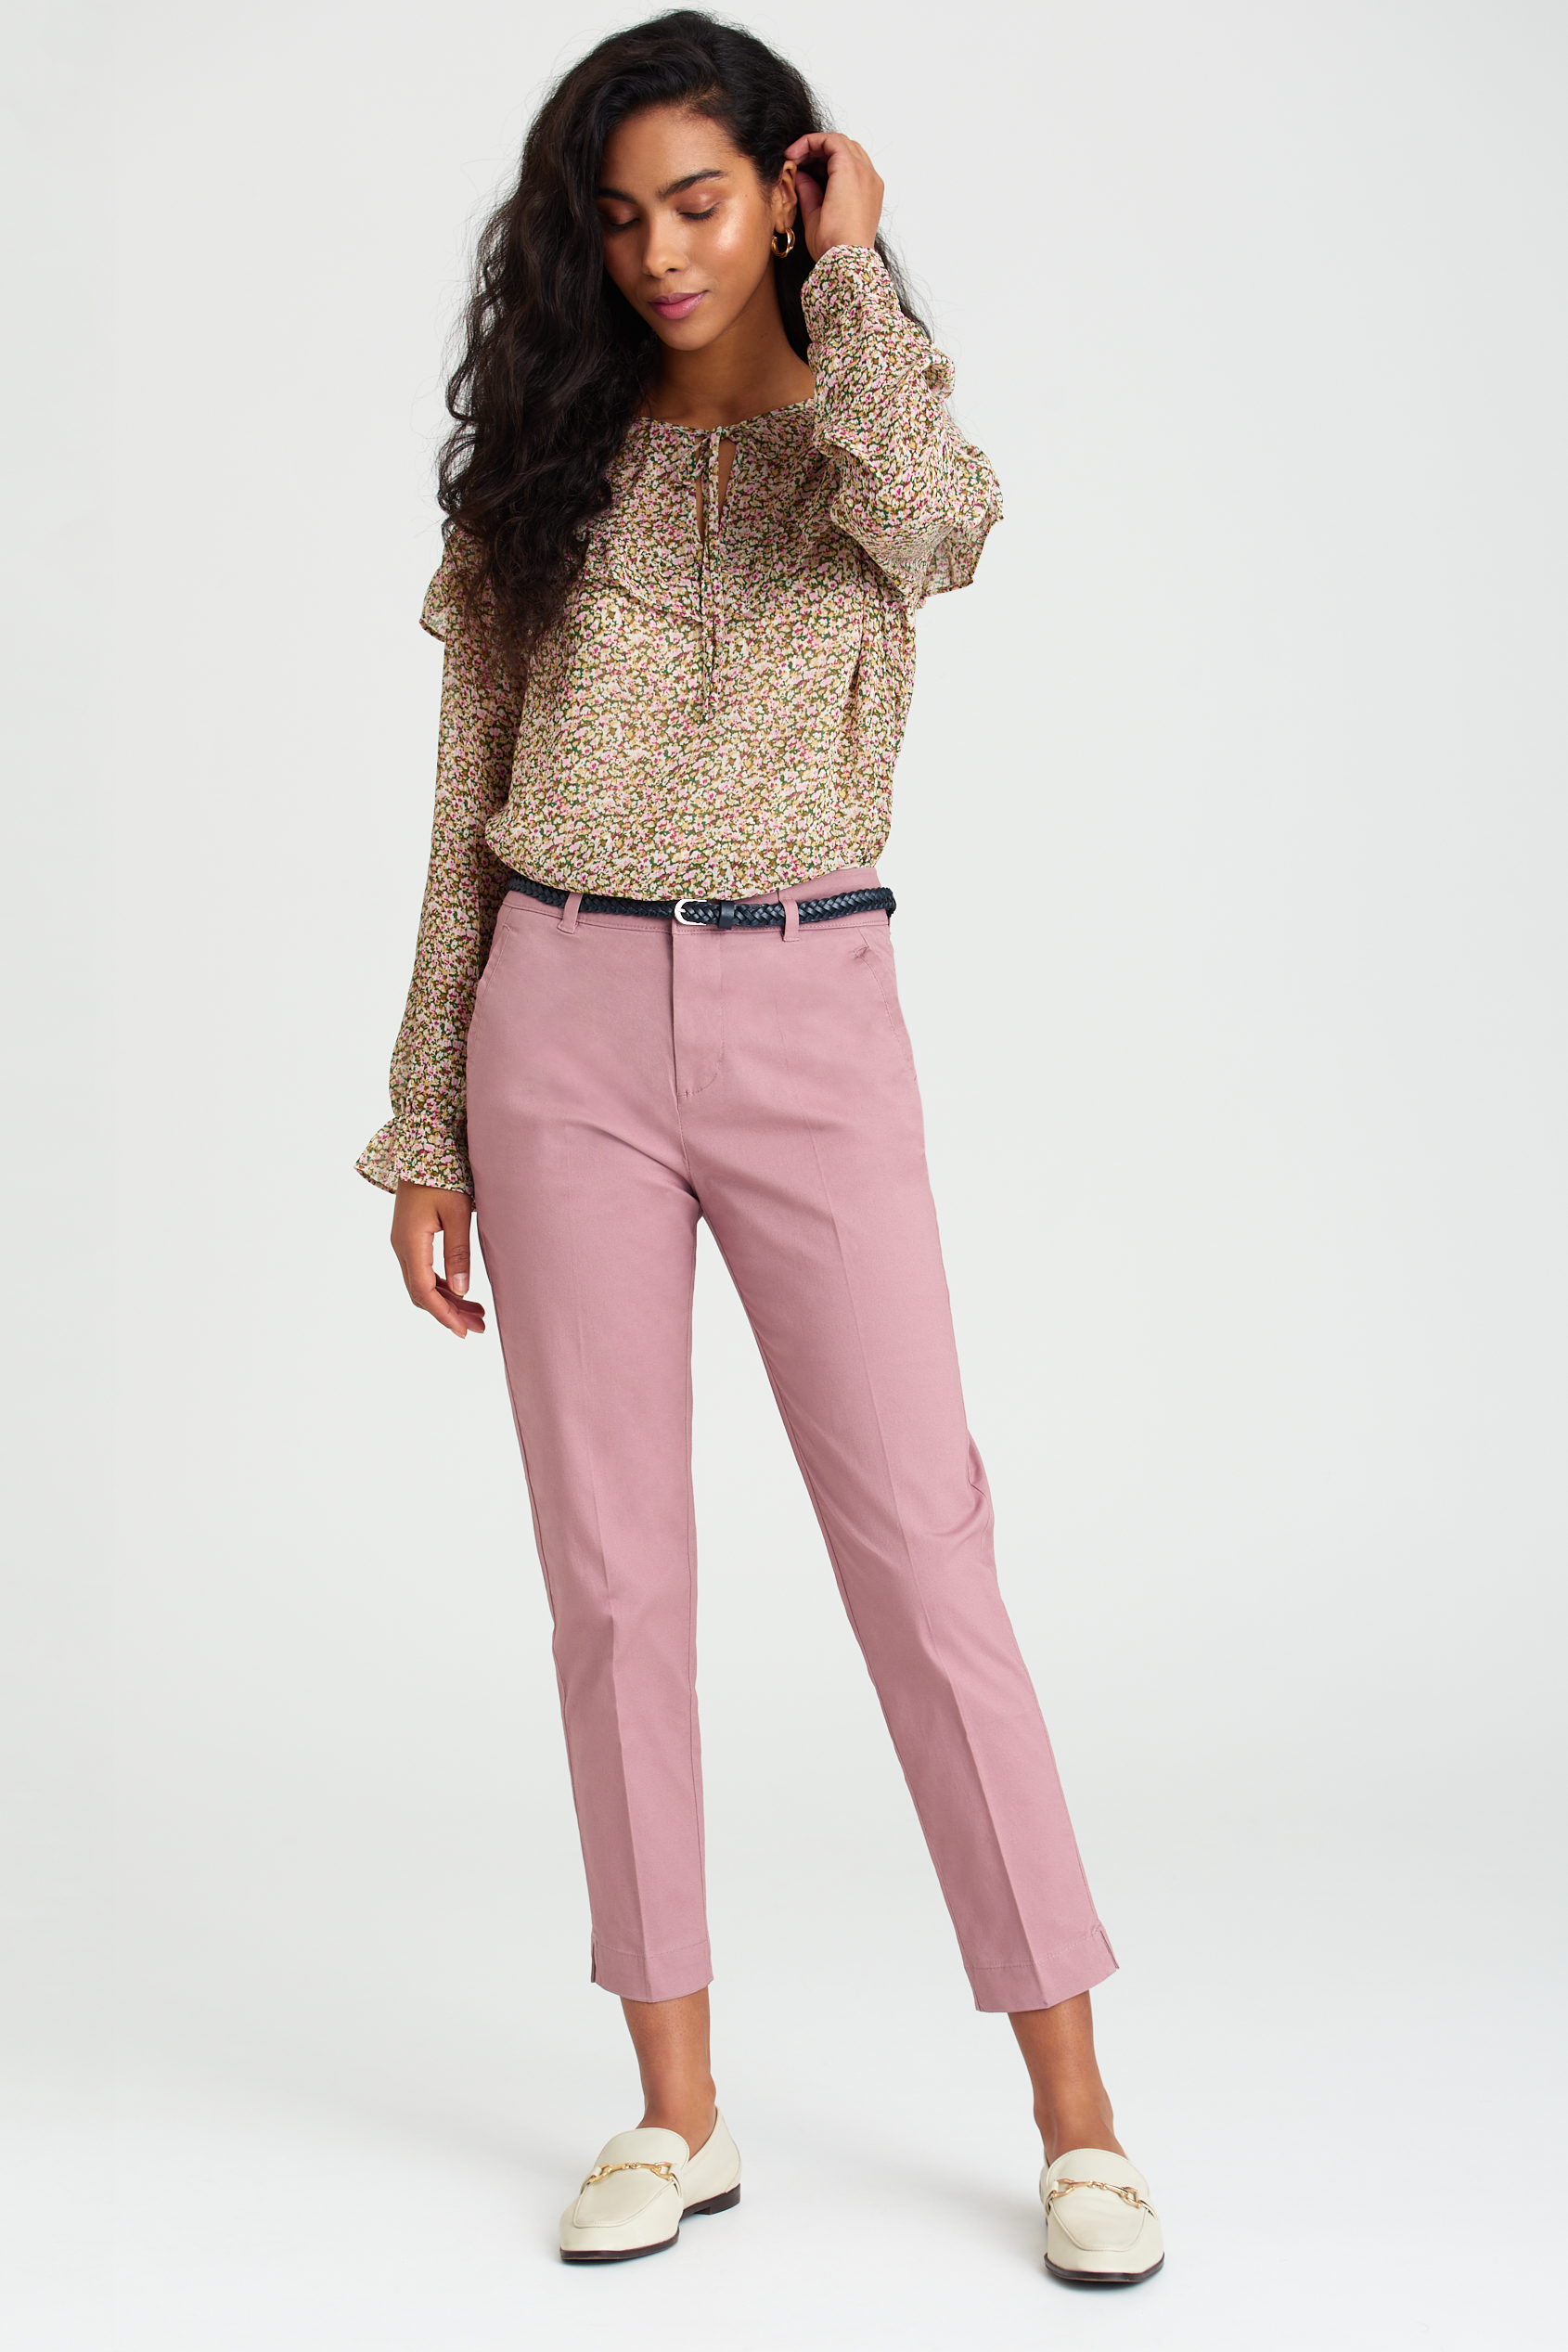 Spodnie chinosy w różowym kolorze